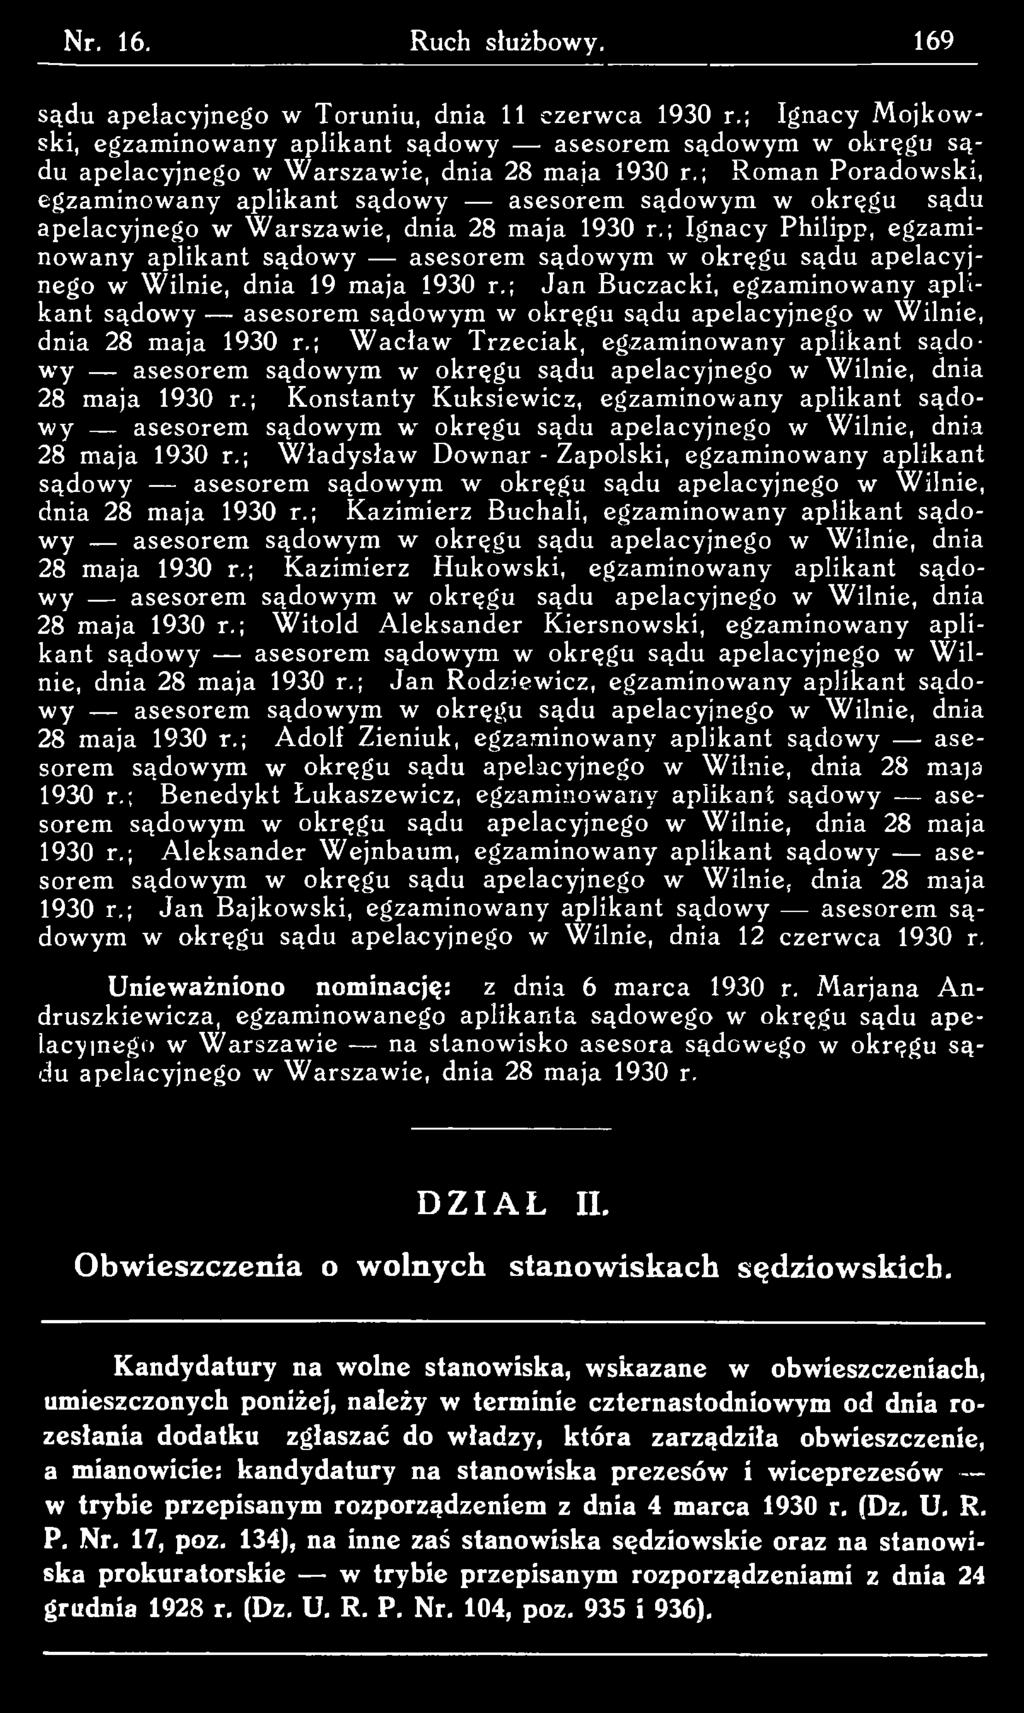 ; W acław Trzeciak, egzaminowany aplikant są d o w y asesorem sądowym w okręgu sądu apelacyjnego w Wilnie, dnia 28 maja 1930 r.